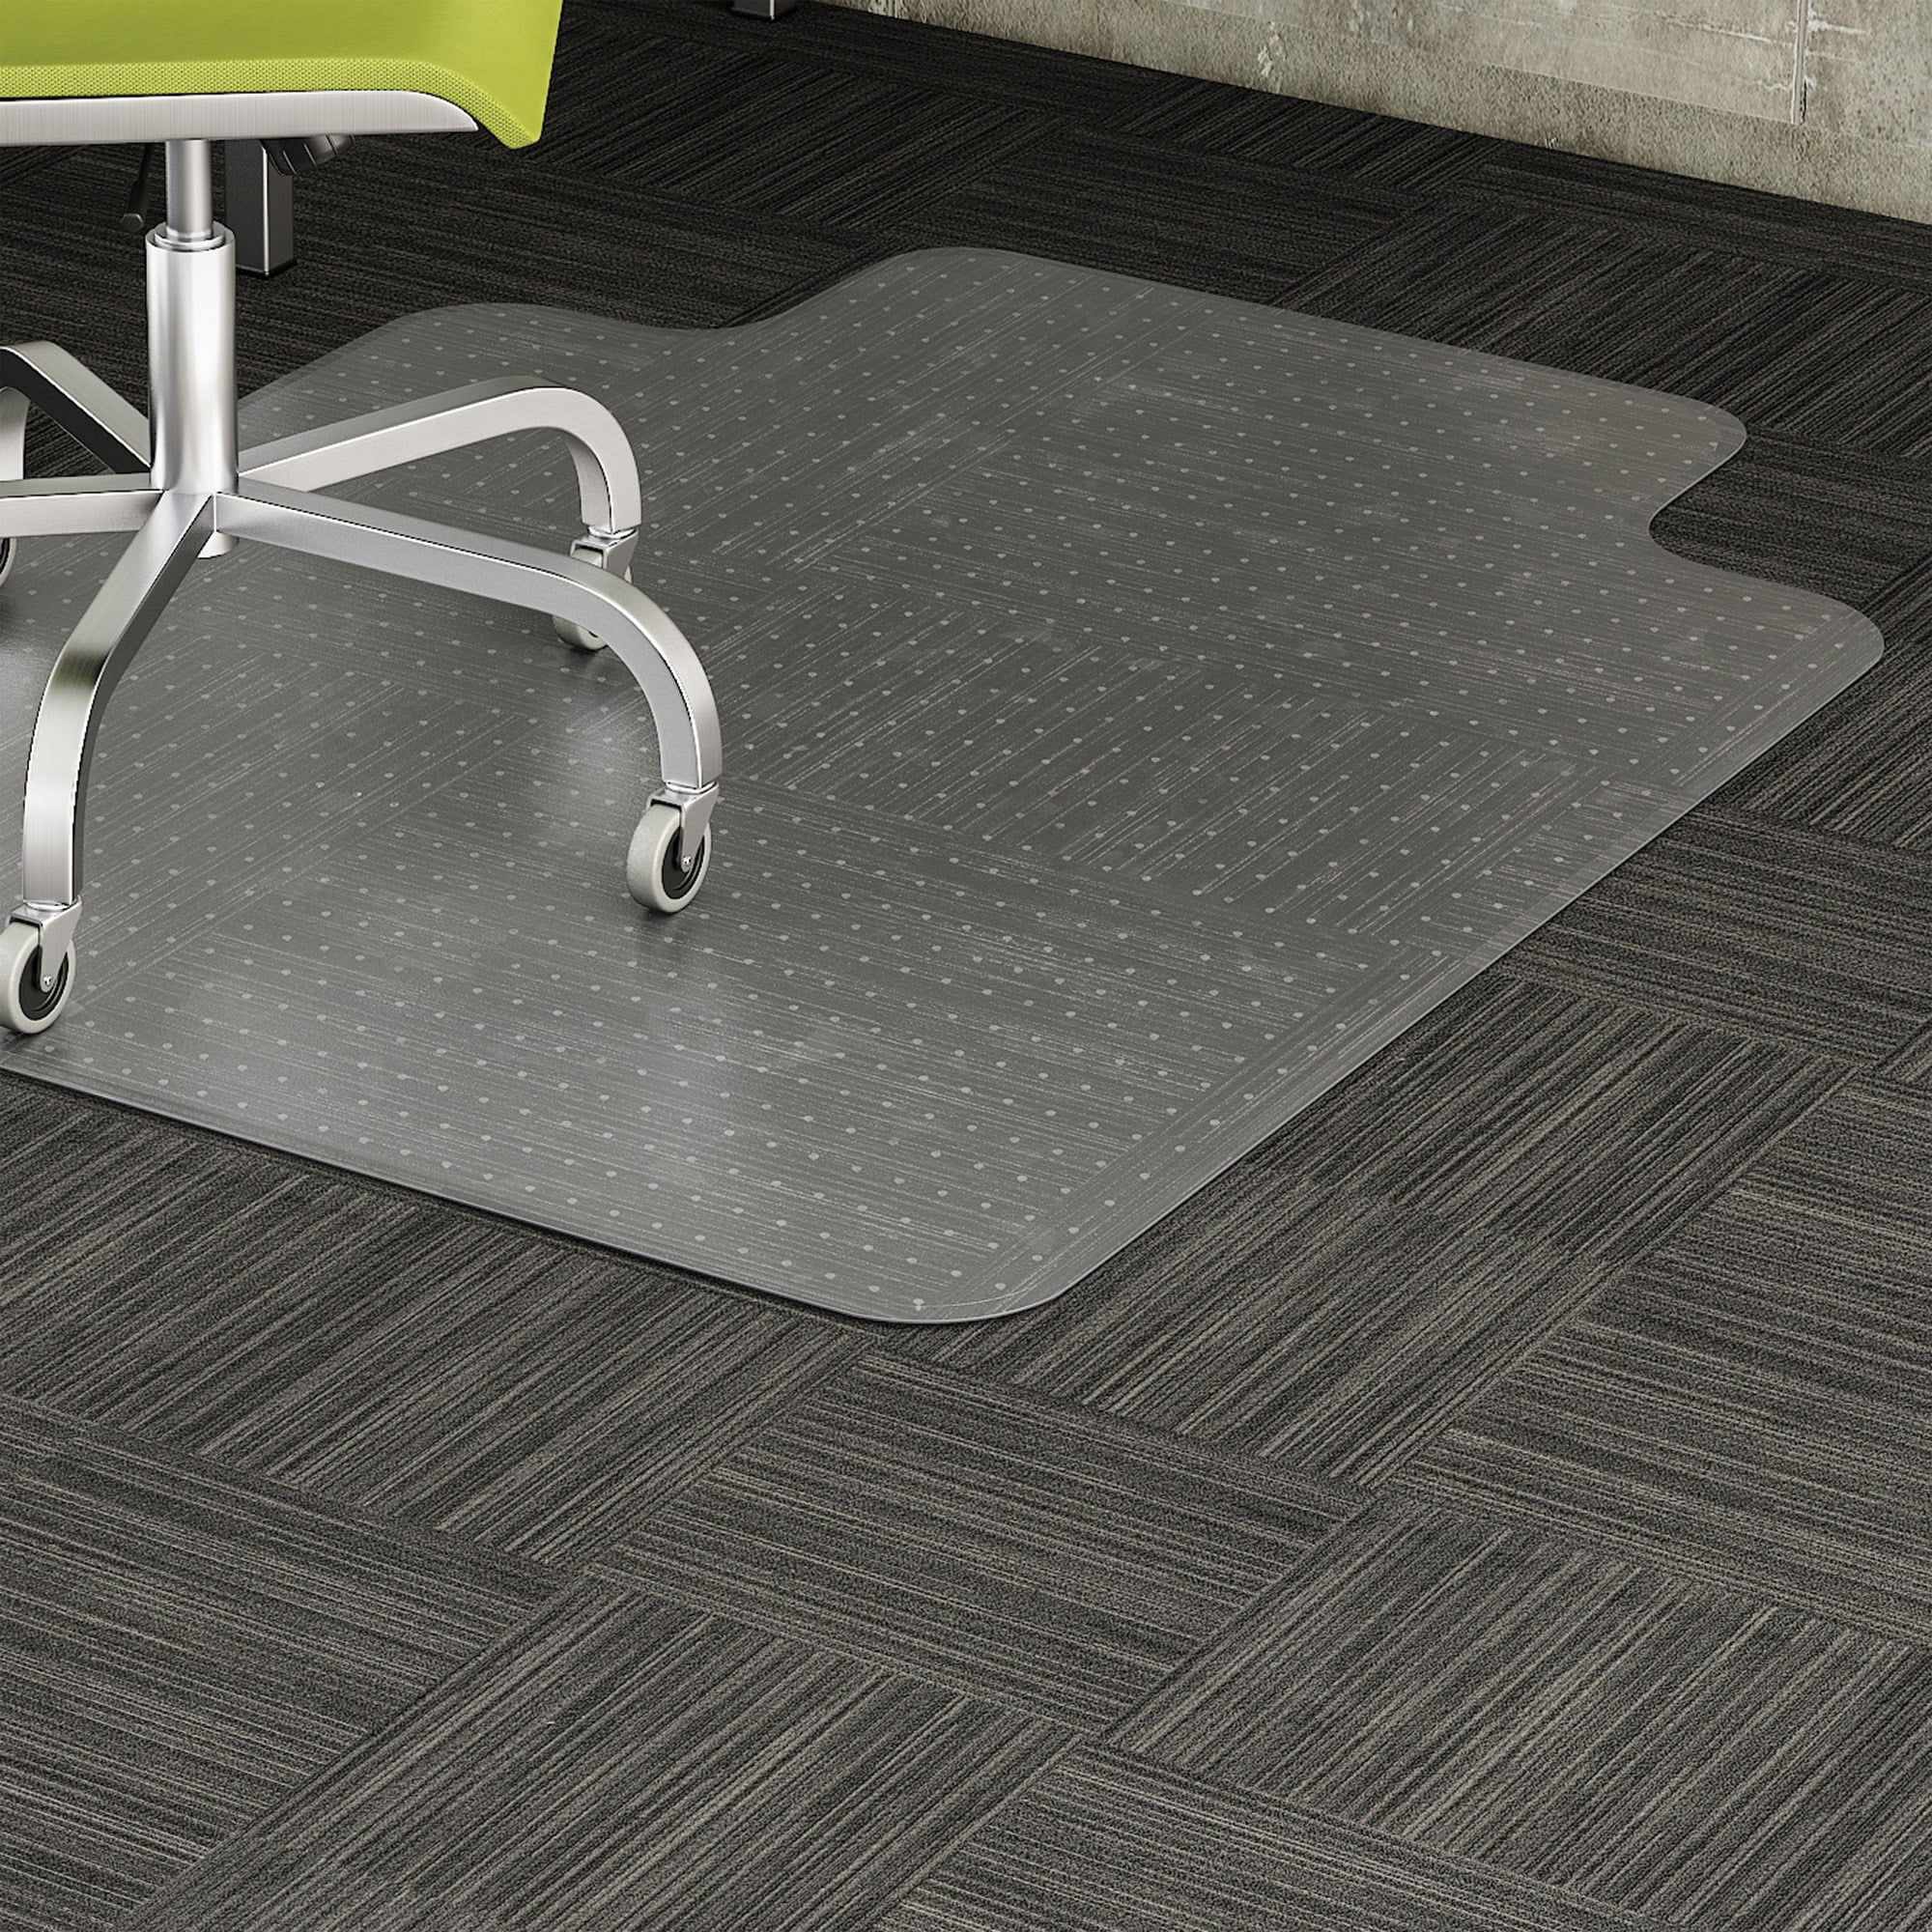 ES Robbins AnchorBar 36 x 48 Chair Mat for Low Pile Carpet 